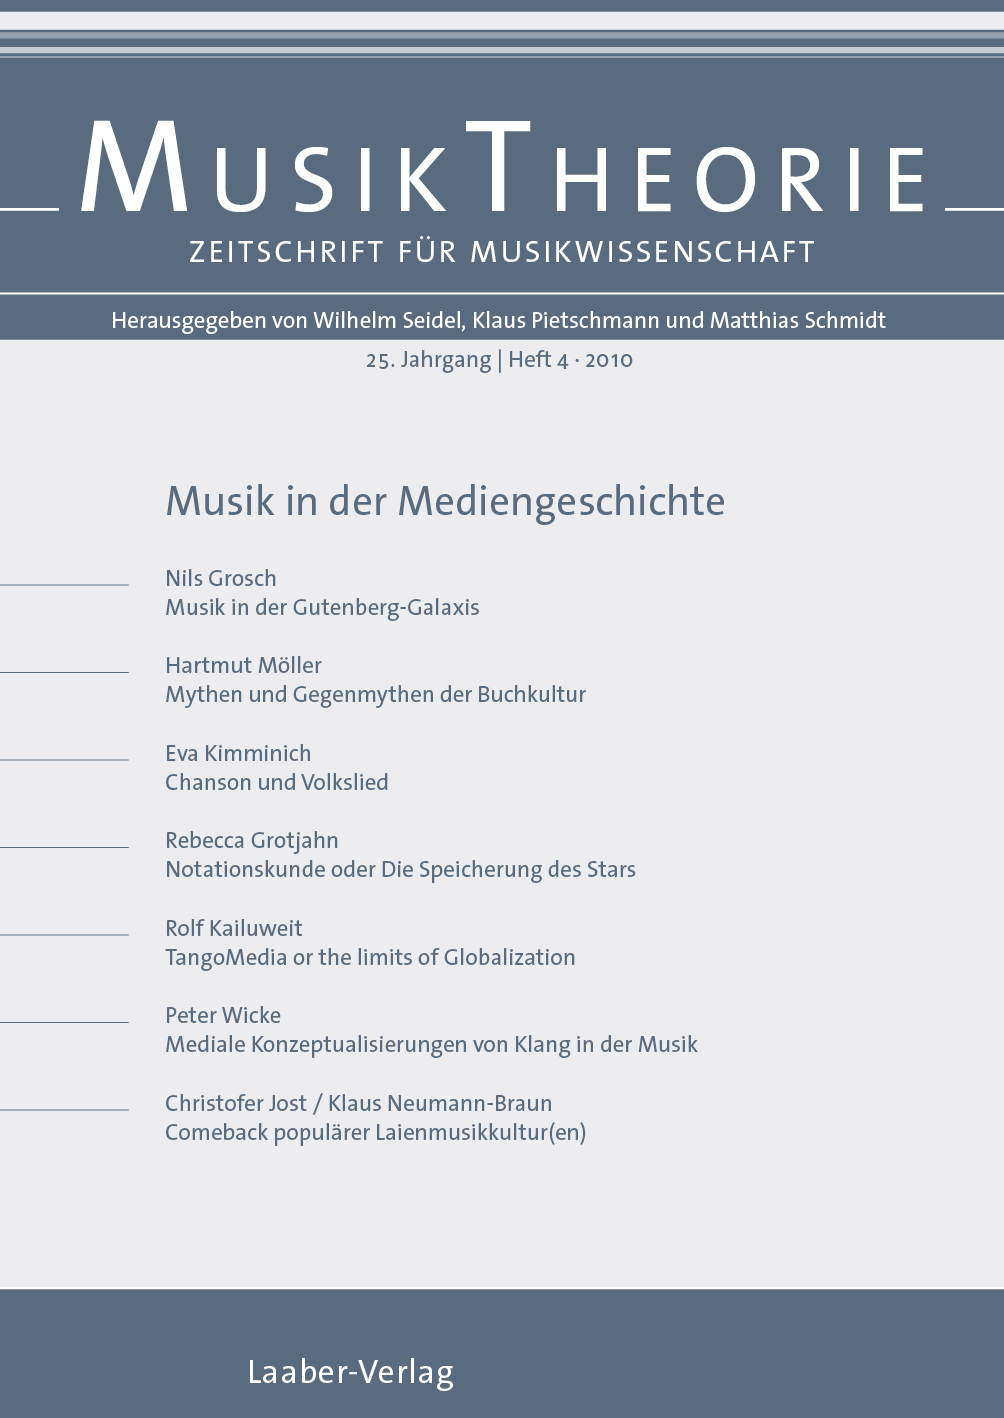 Musiktheorie Heft 4/2010